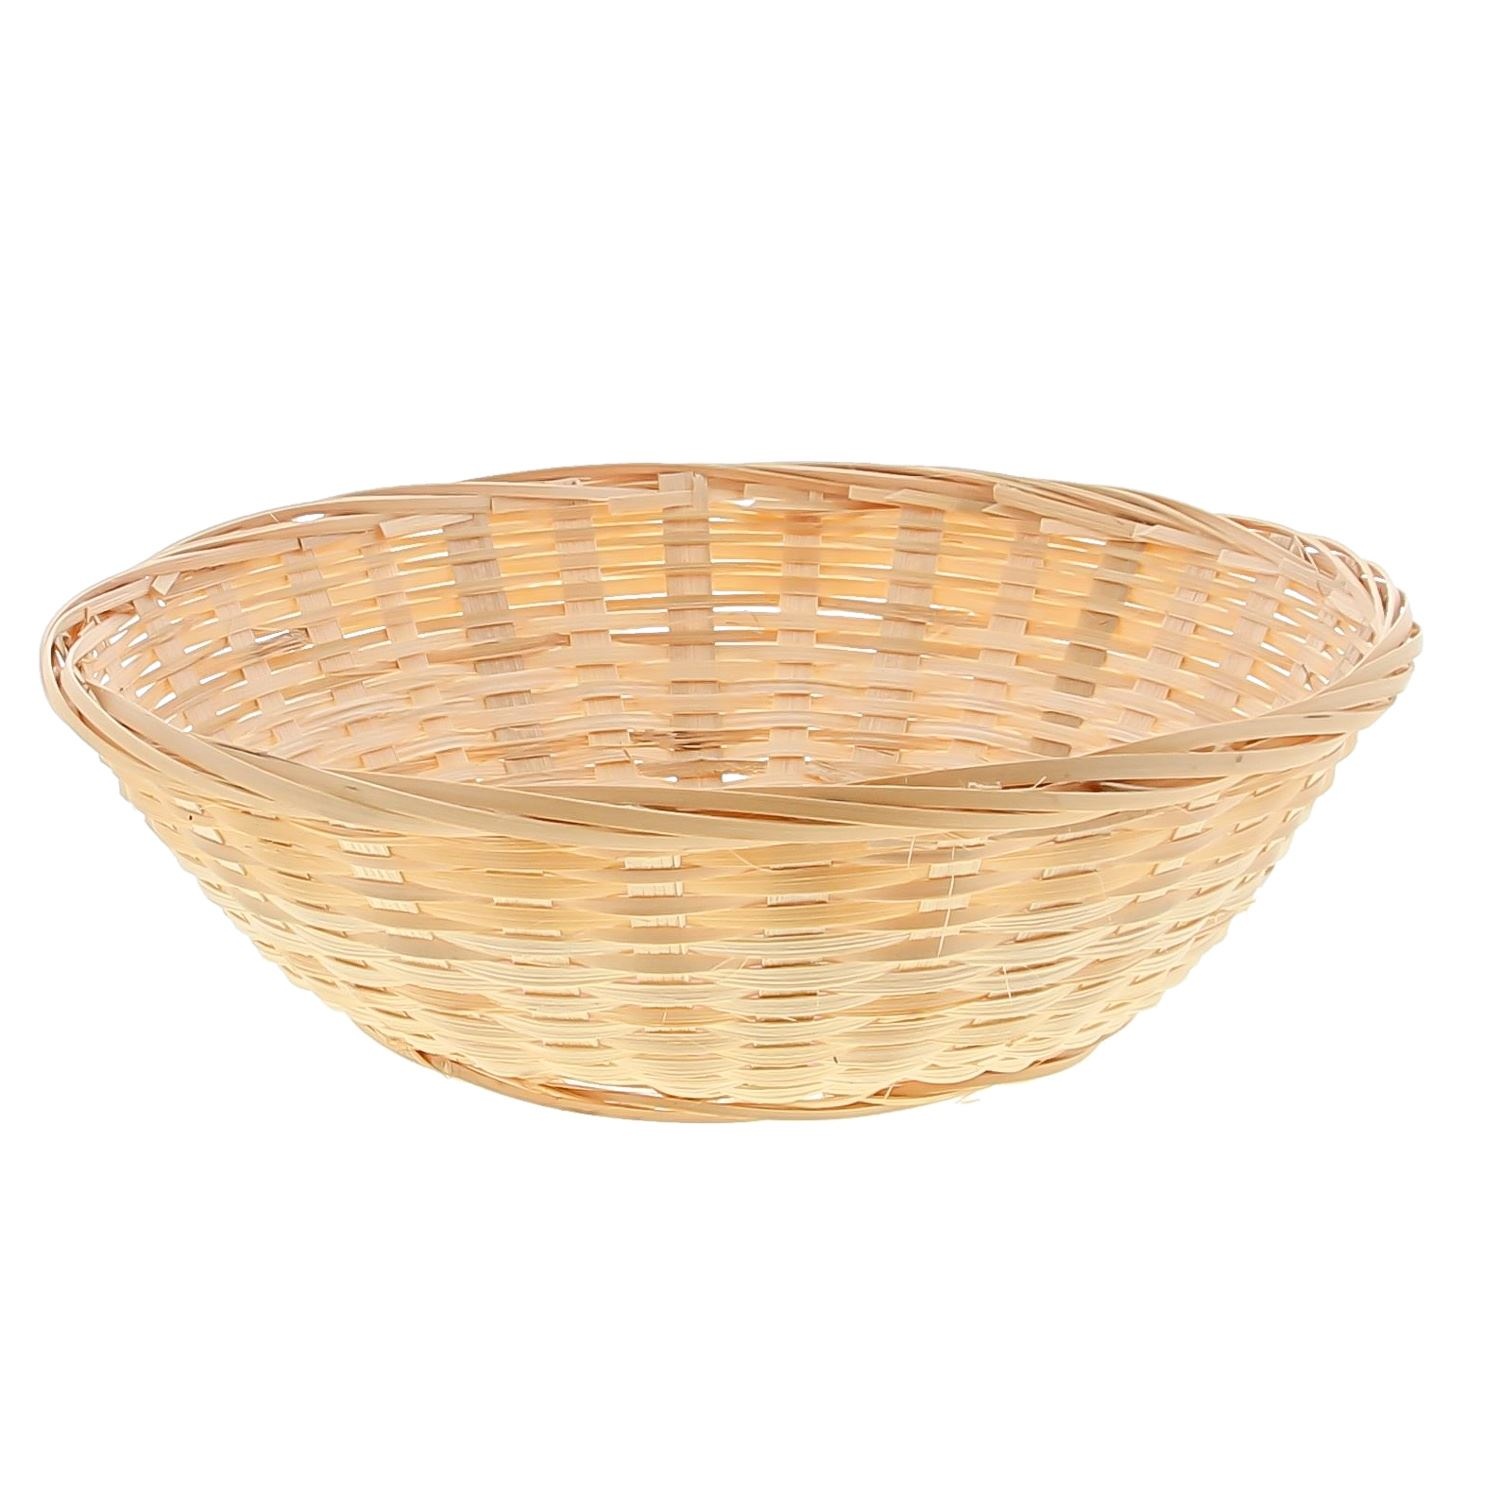 Round wicker basket - natural - 275*90*275mm - 25 pieces